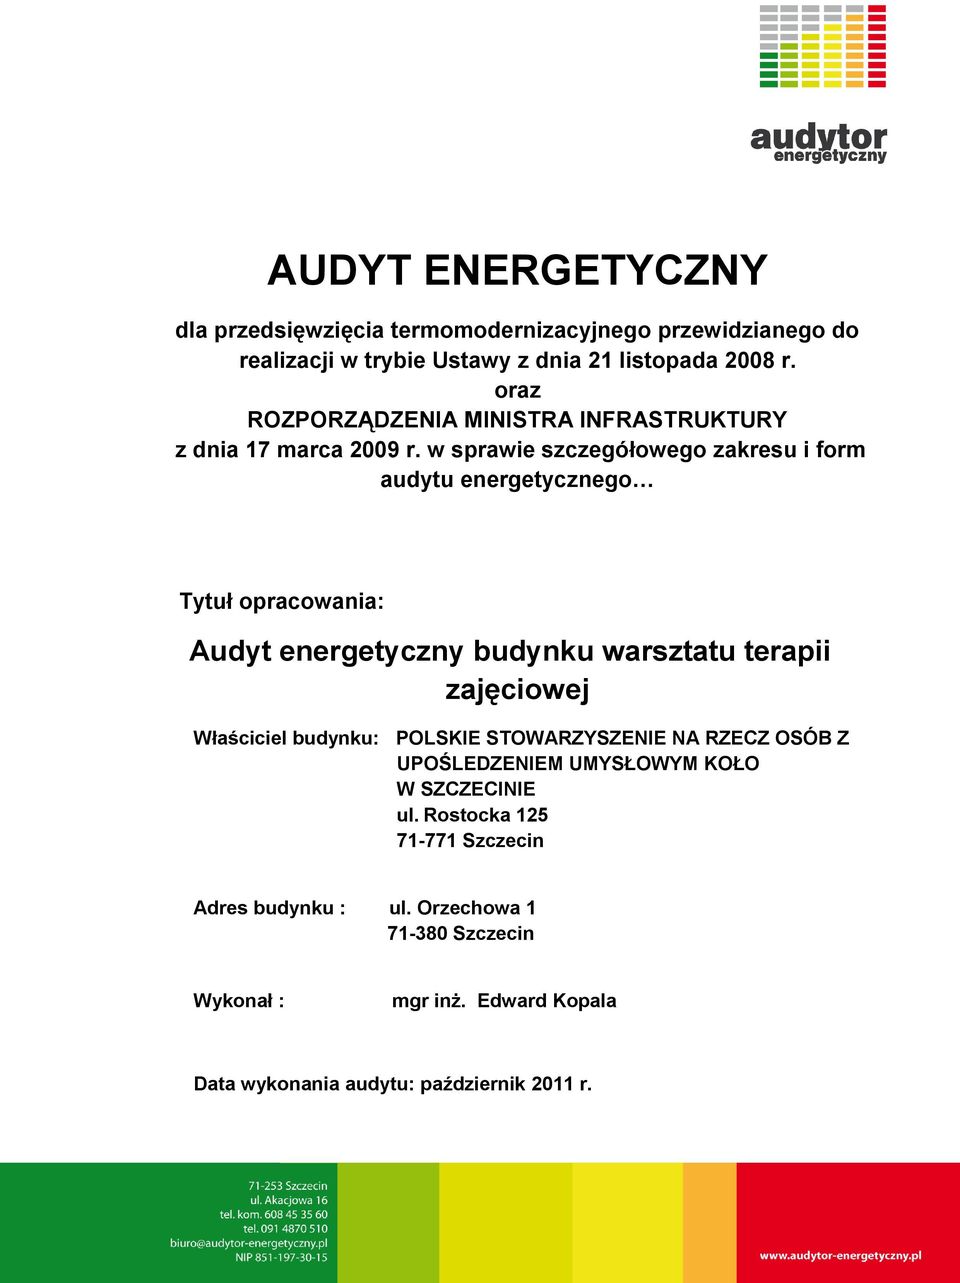 w sprawie szczegółowego zakresu i form audytu energetycznego Tytuł opracowania: Audyt energetyczny budynku warsztatu terapii zajęciowej Właściciel